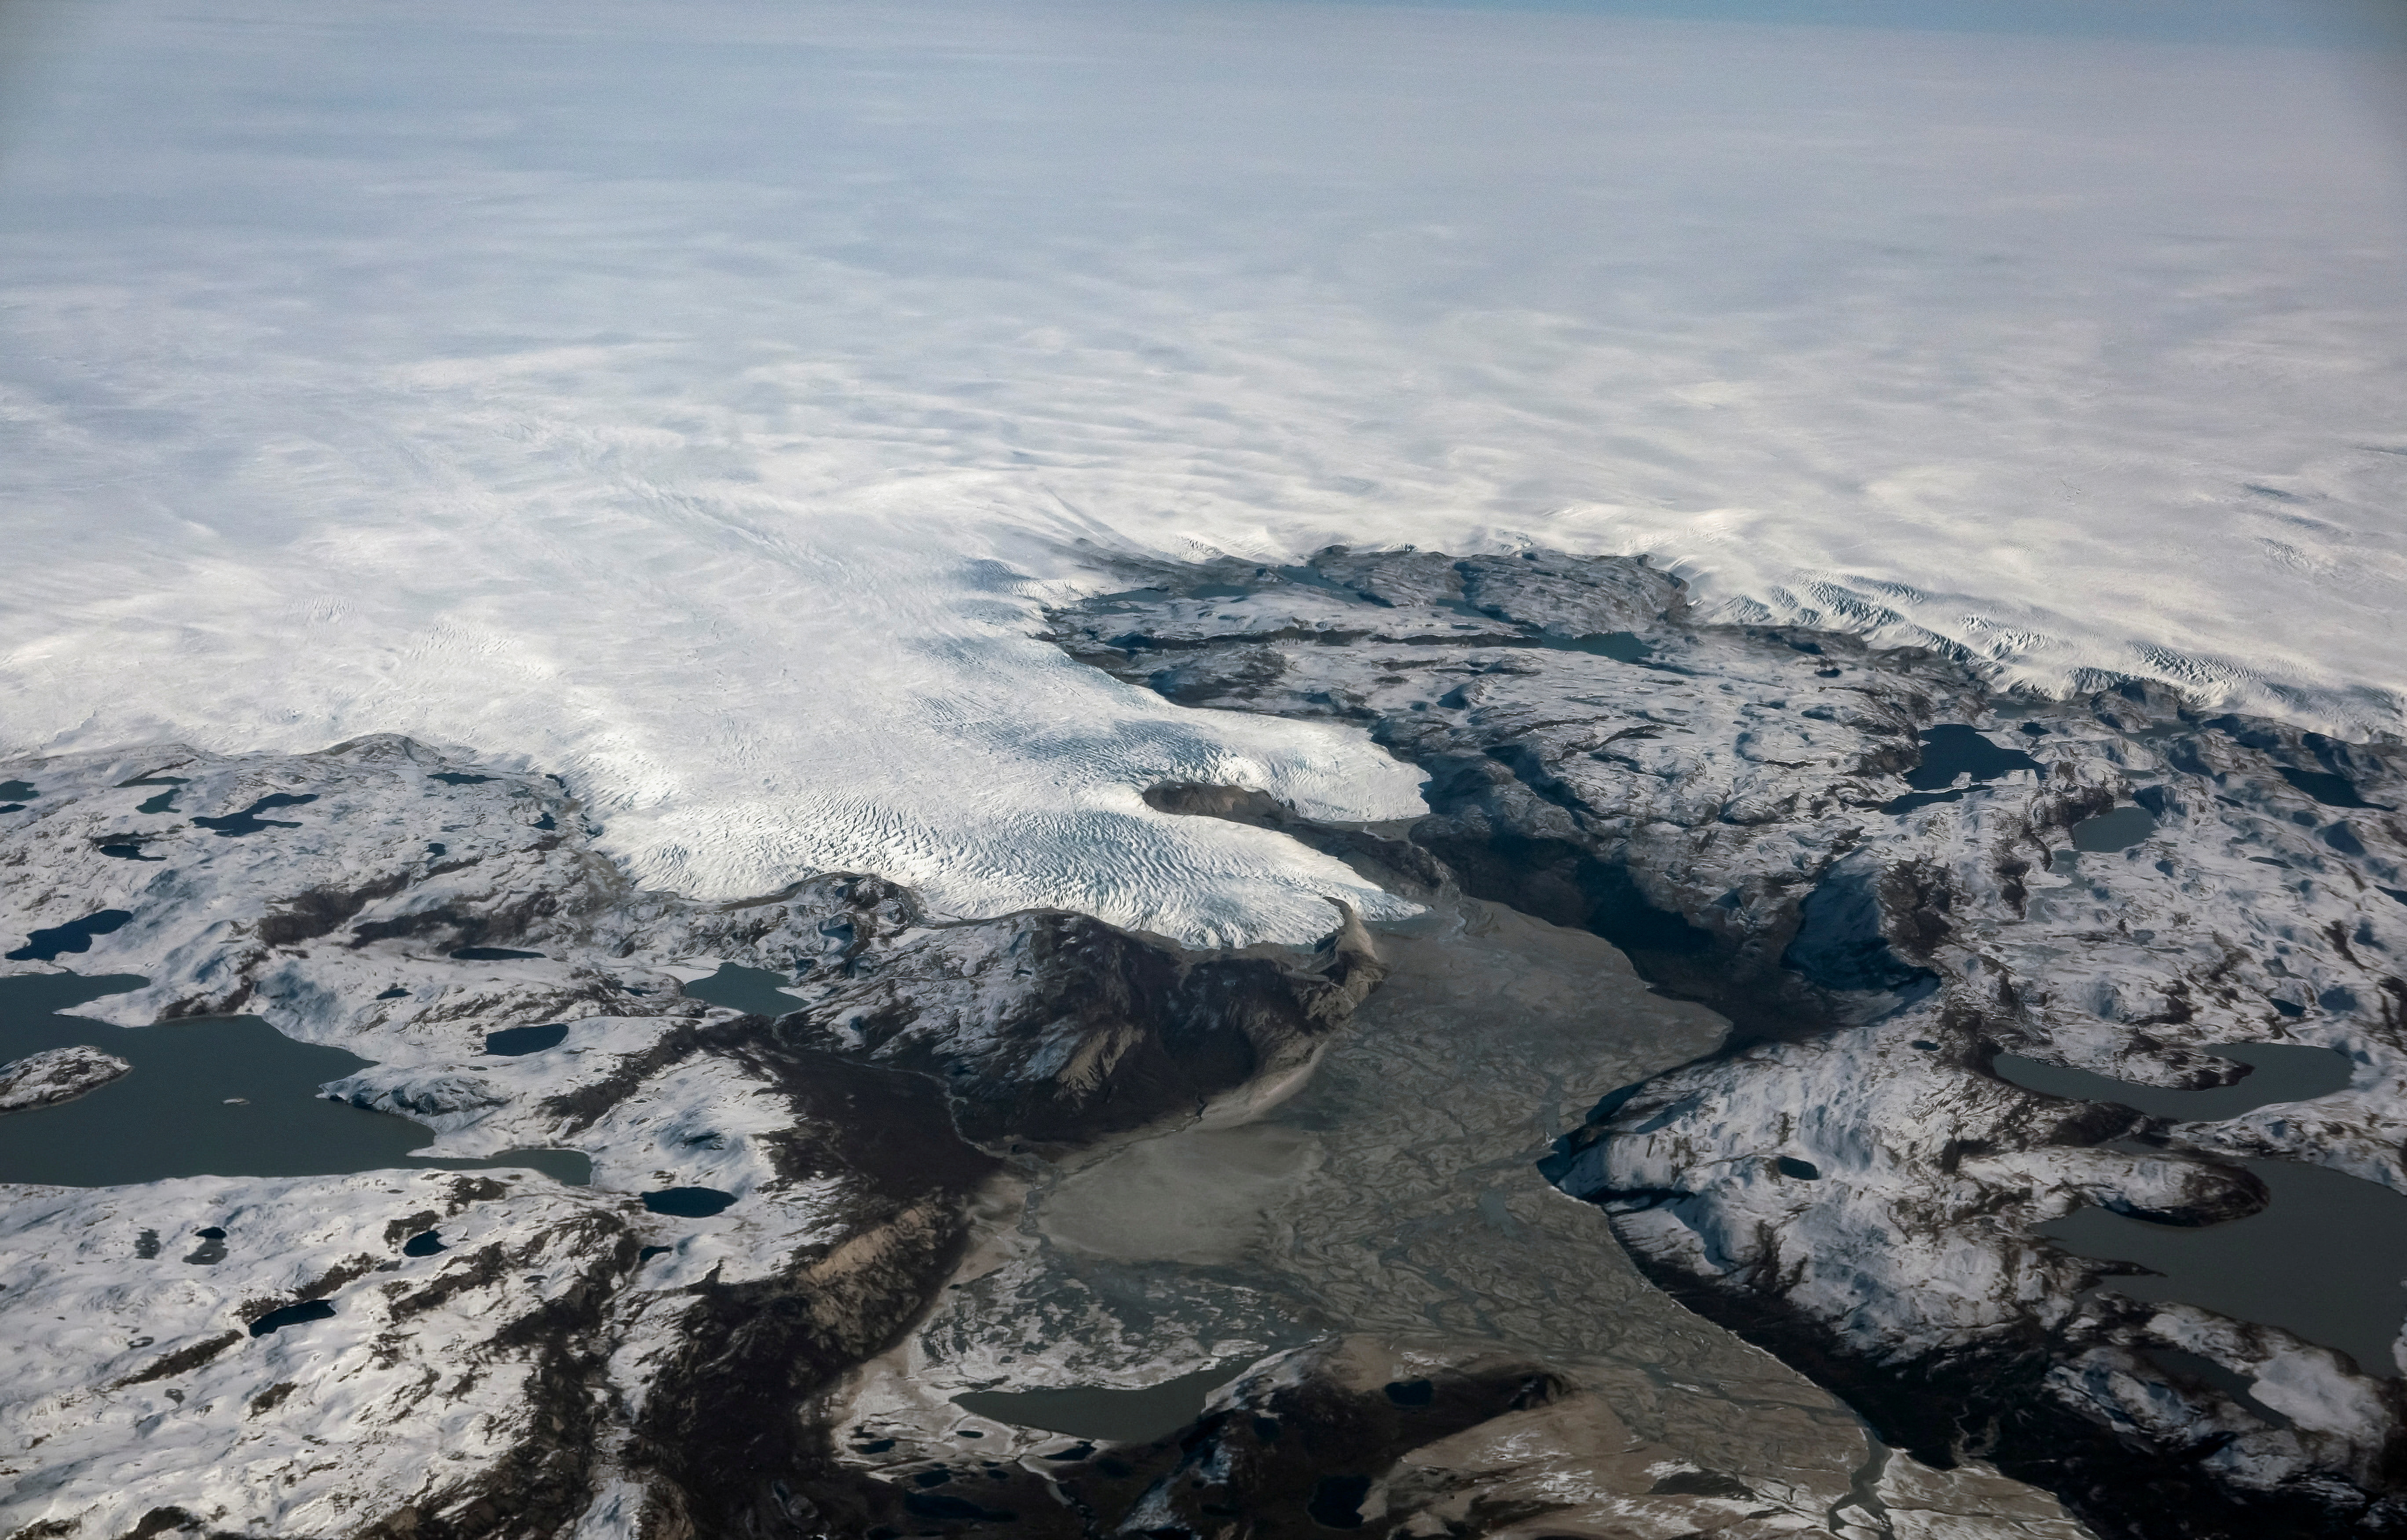 FOTO DE ARCHIVO: El borde de la capa de hielo se muestra al sur de Ilulissat, Groenlandia, el 17 de septiembre de 2021. REUTERS/Hannibal Hanschke/File Photo